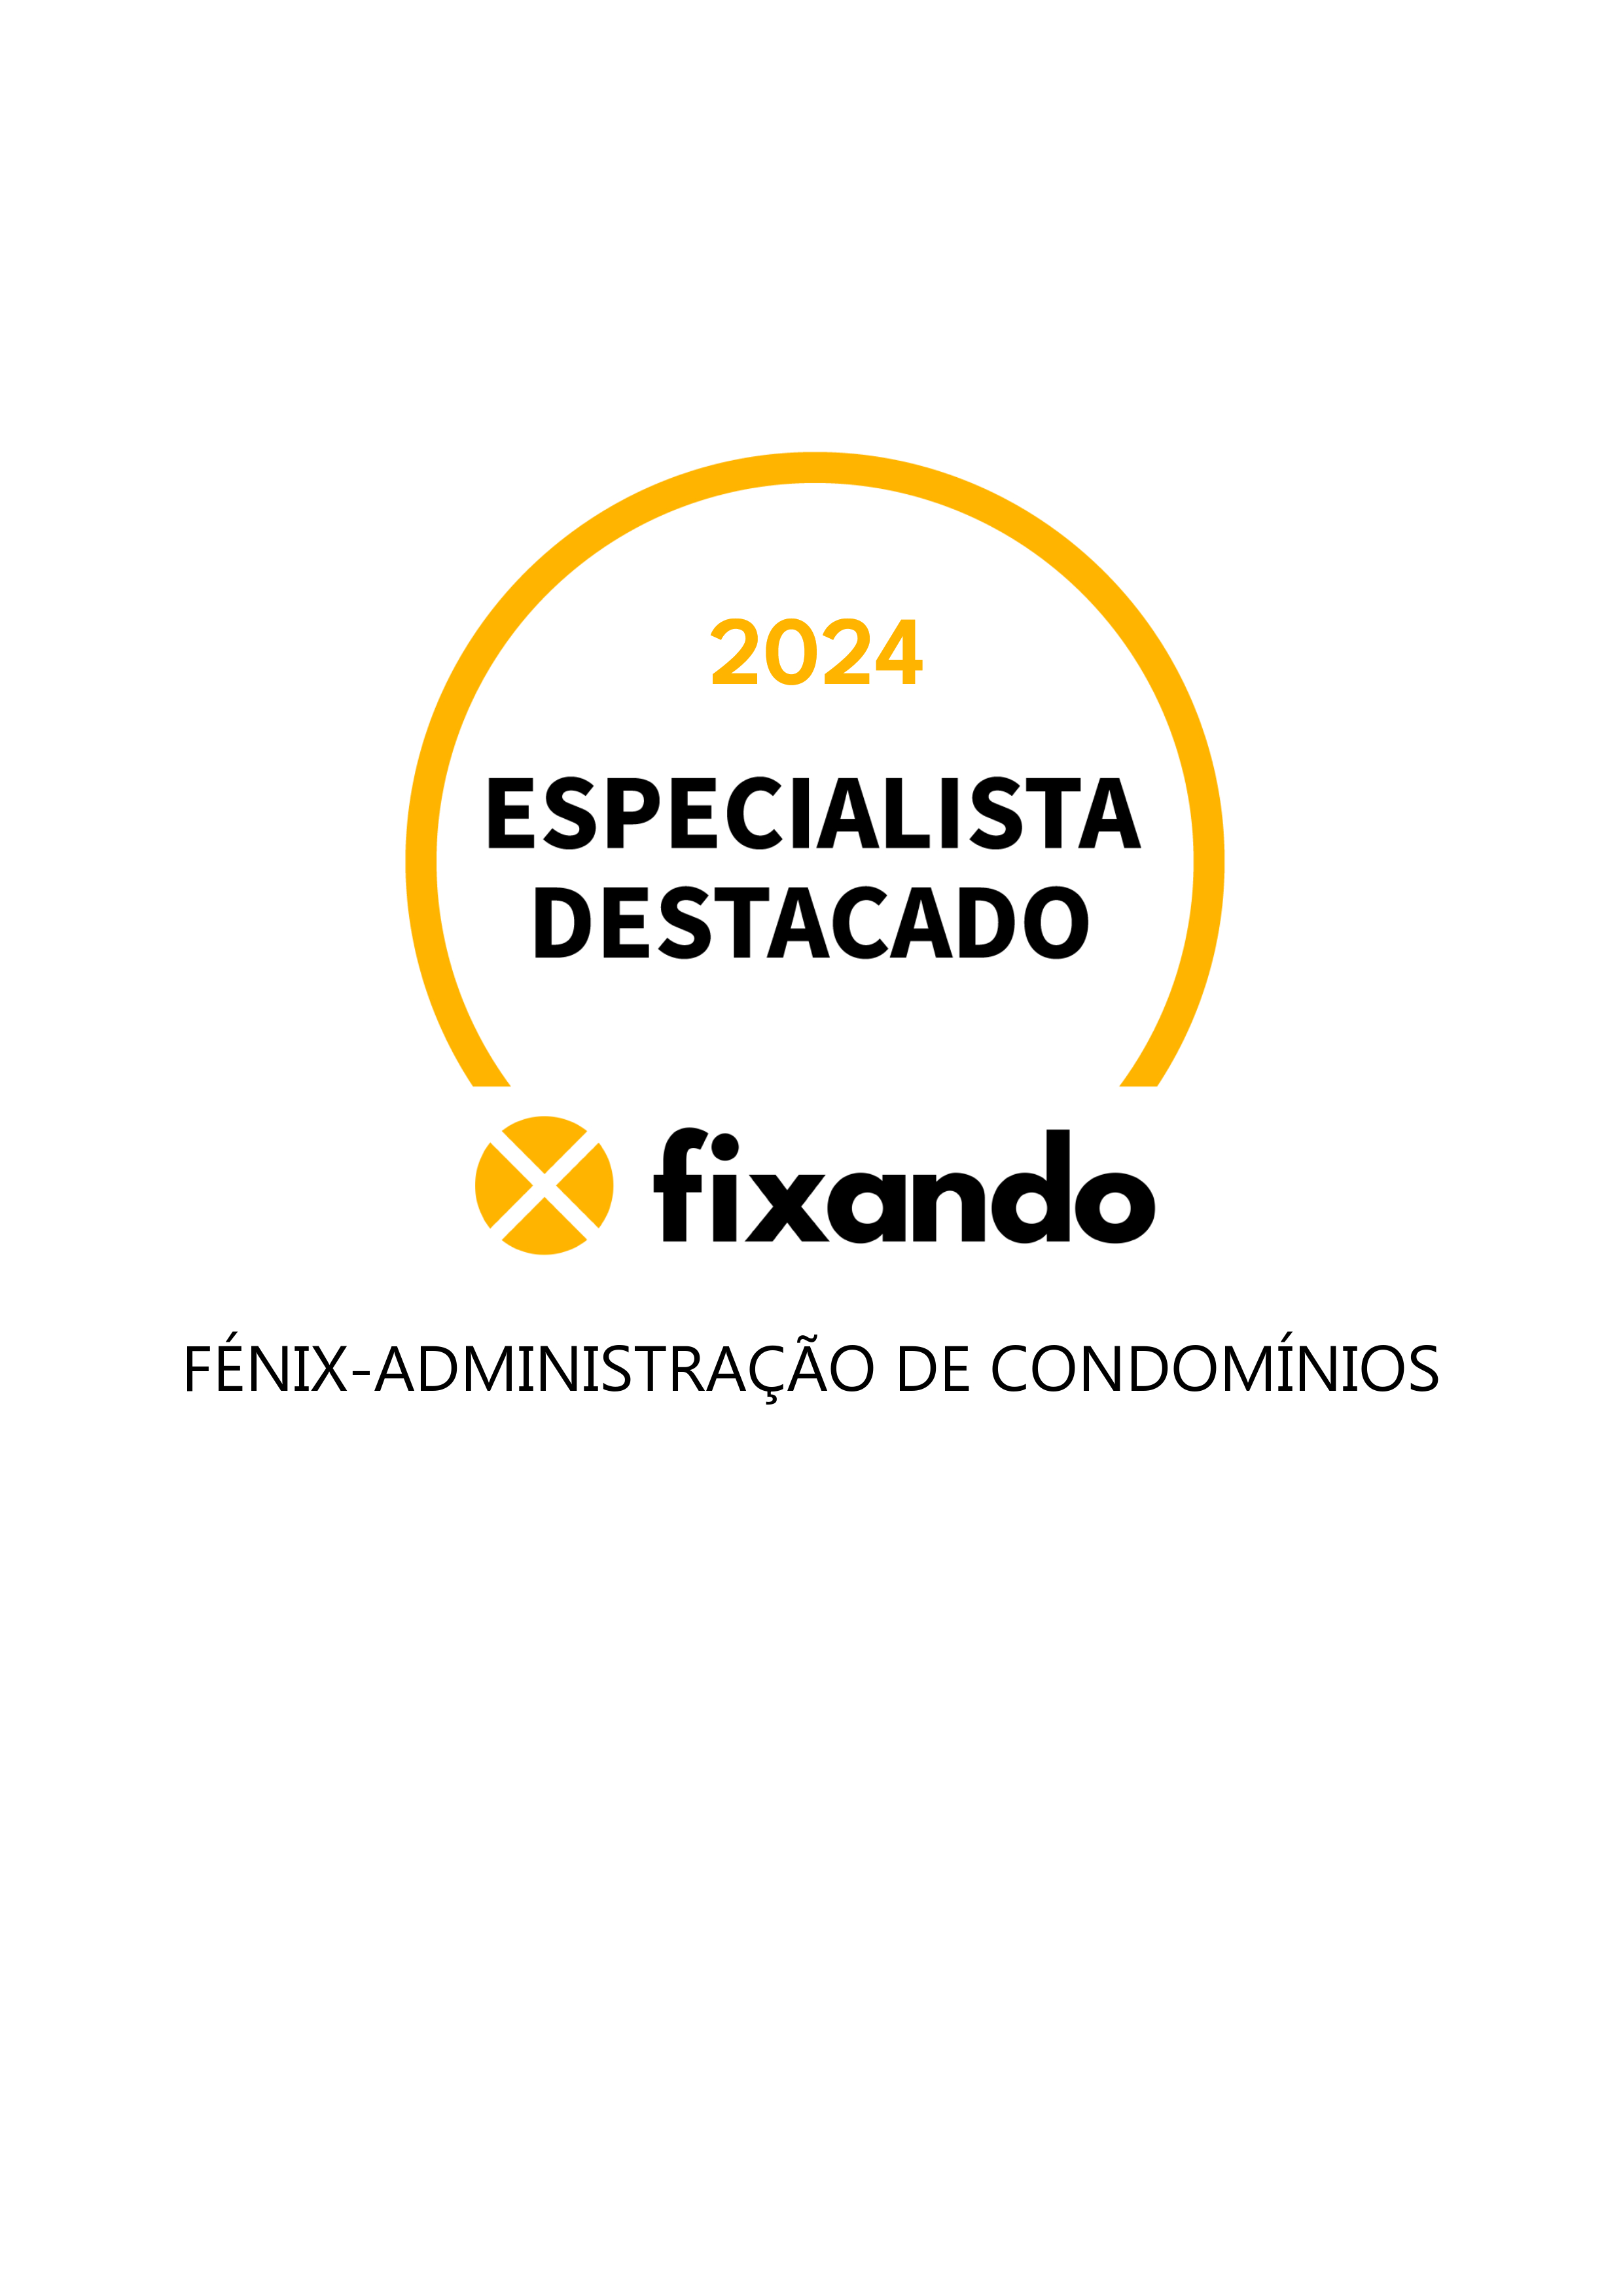 Fénix-Administração de Condomínios - Matosinhos - Gestão de Condomínios